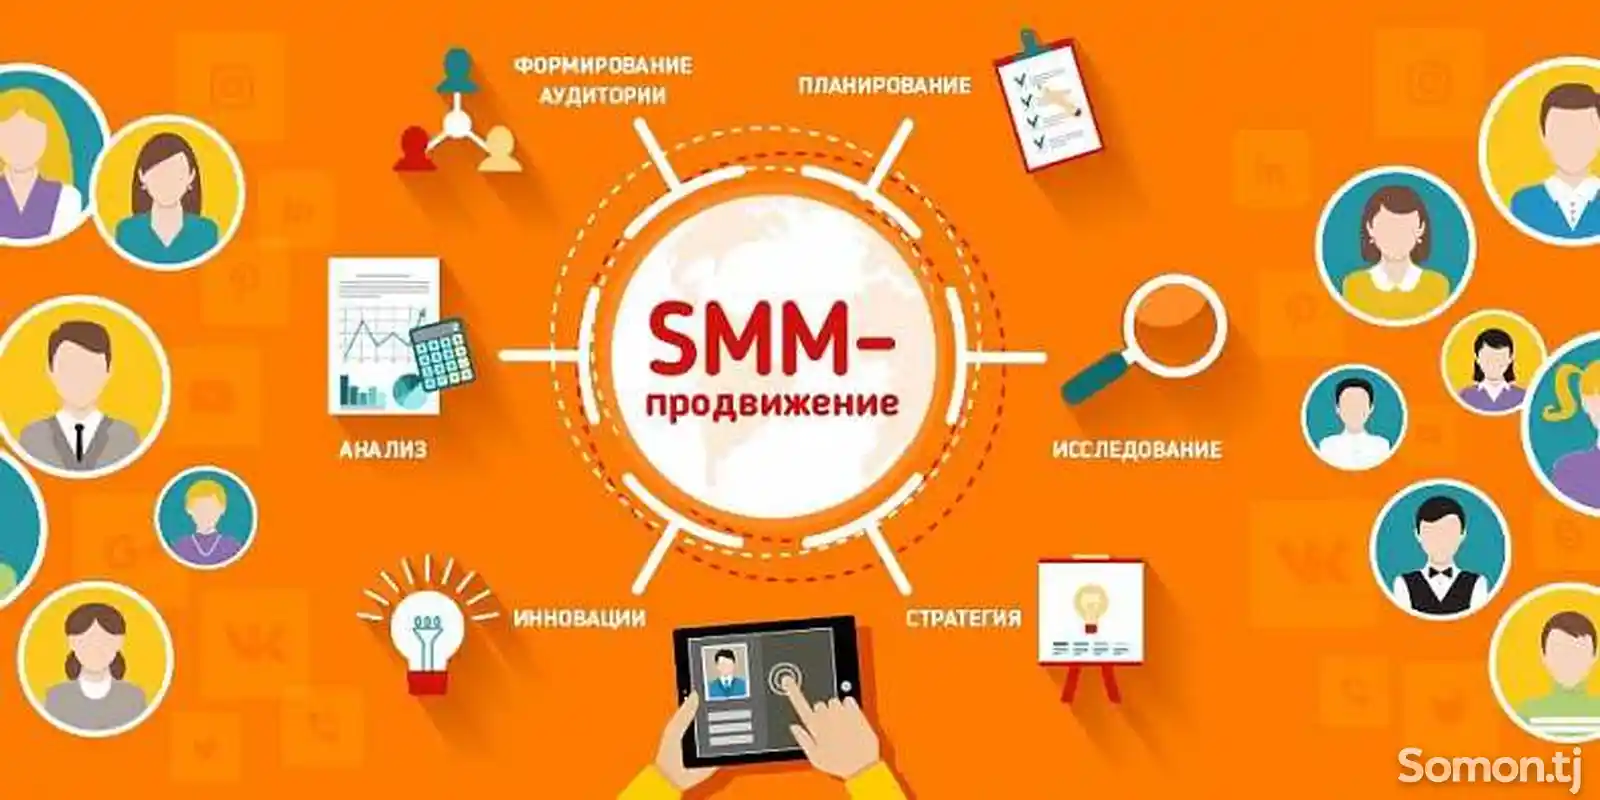 SMM Аналитика и отчетность в социальных сетях-1